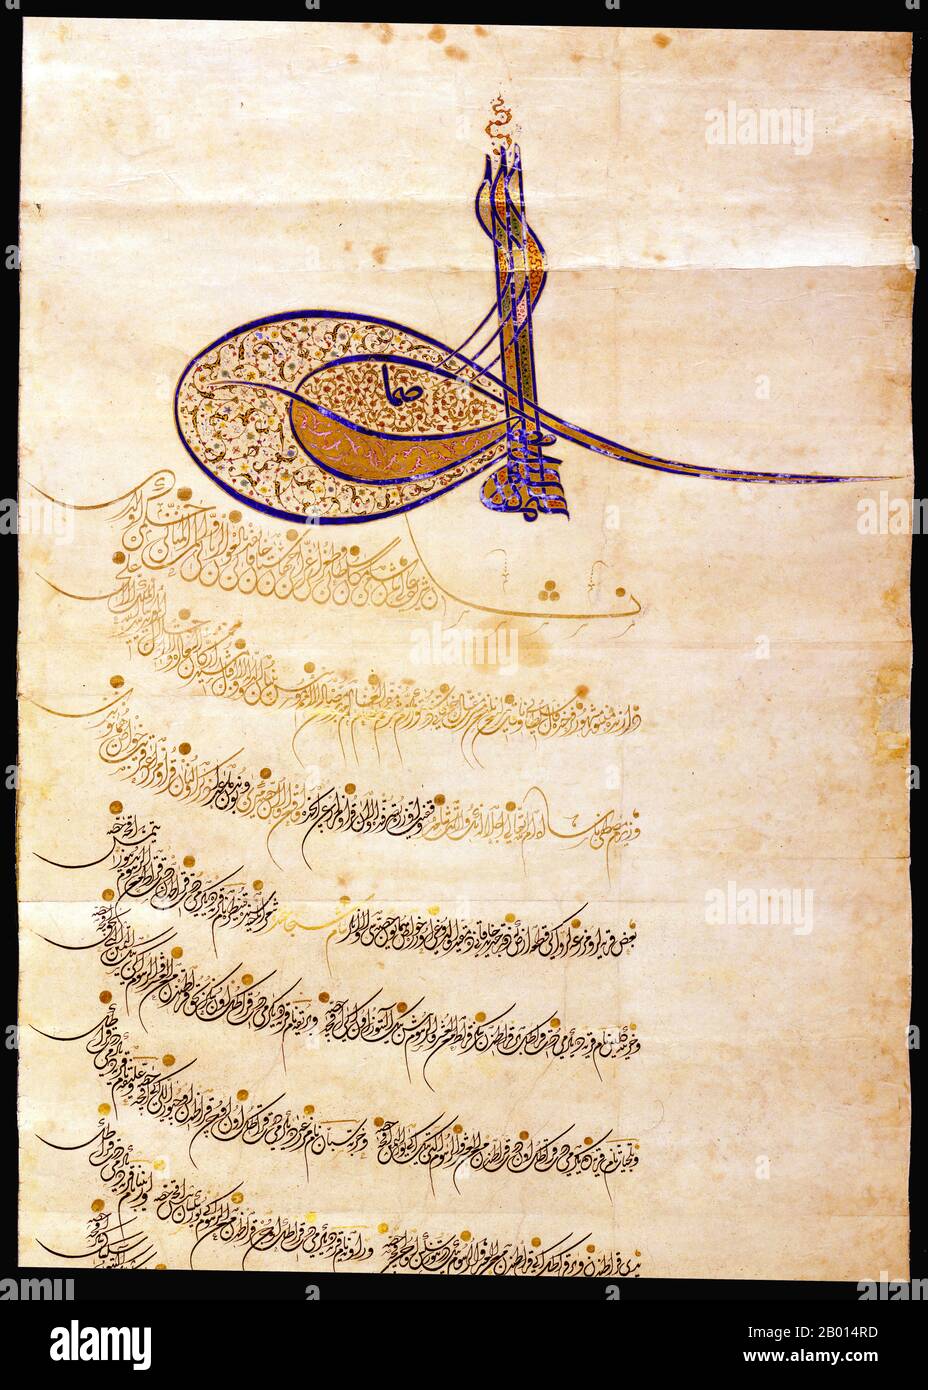 Türkei; ein osmanischer Firman oder Dekret vom 981 Hijri oder 1573 u.Z. mit dem Tuhra oder Siegel von Sultan Selim II. (R.1566-1574). Das osmanische kaiserliche Dekret – firman – besteht aus dem Dekret selbst, das häufig in der Kanzlerschrift Divani geschrieben wird, mit den Unterschriften der Beamten unten und der Unterschrift des regierenden Sultans in Form eines komplizierten Tuhras oben. Stockfoto